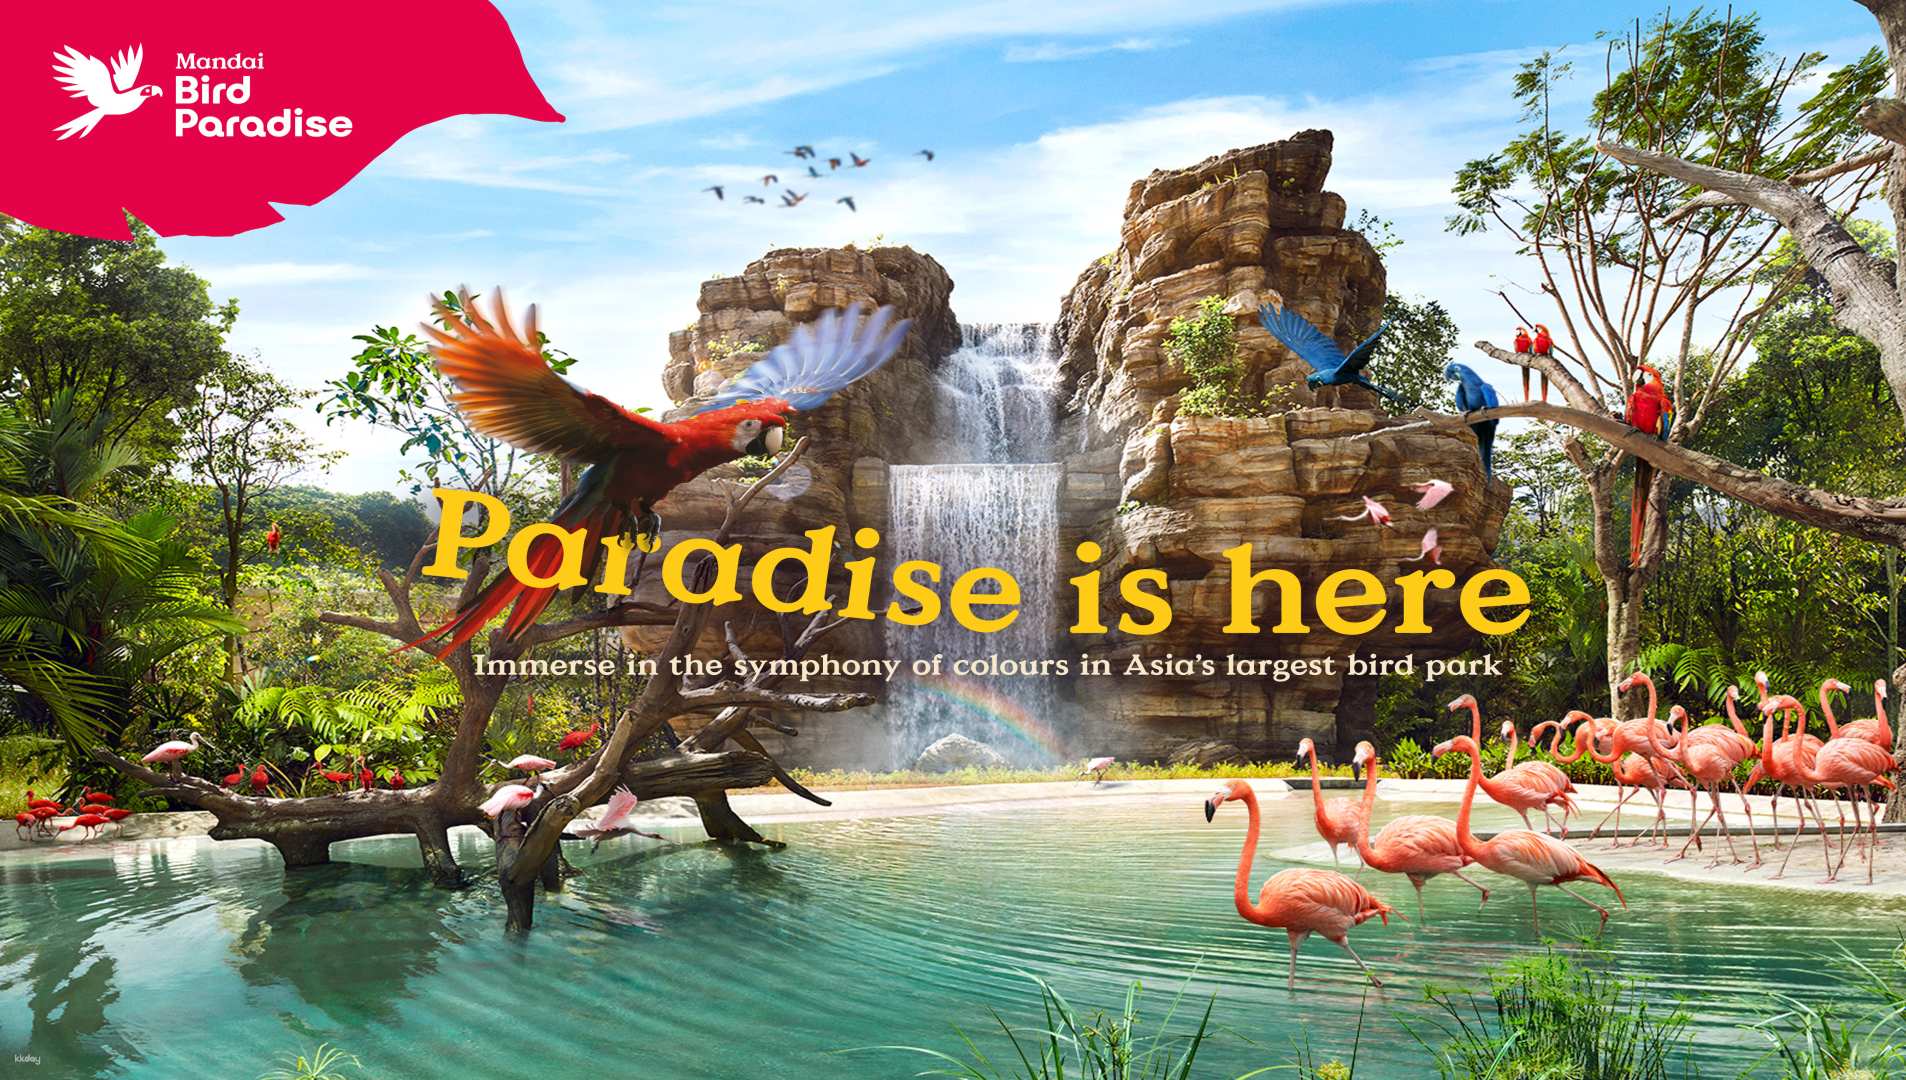 新加坡-飛禽世界 (Bird Paradise)| 亞洲最大的鳥類樂園